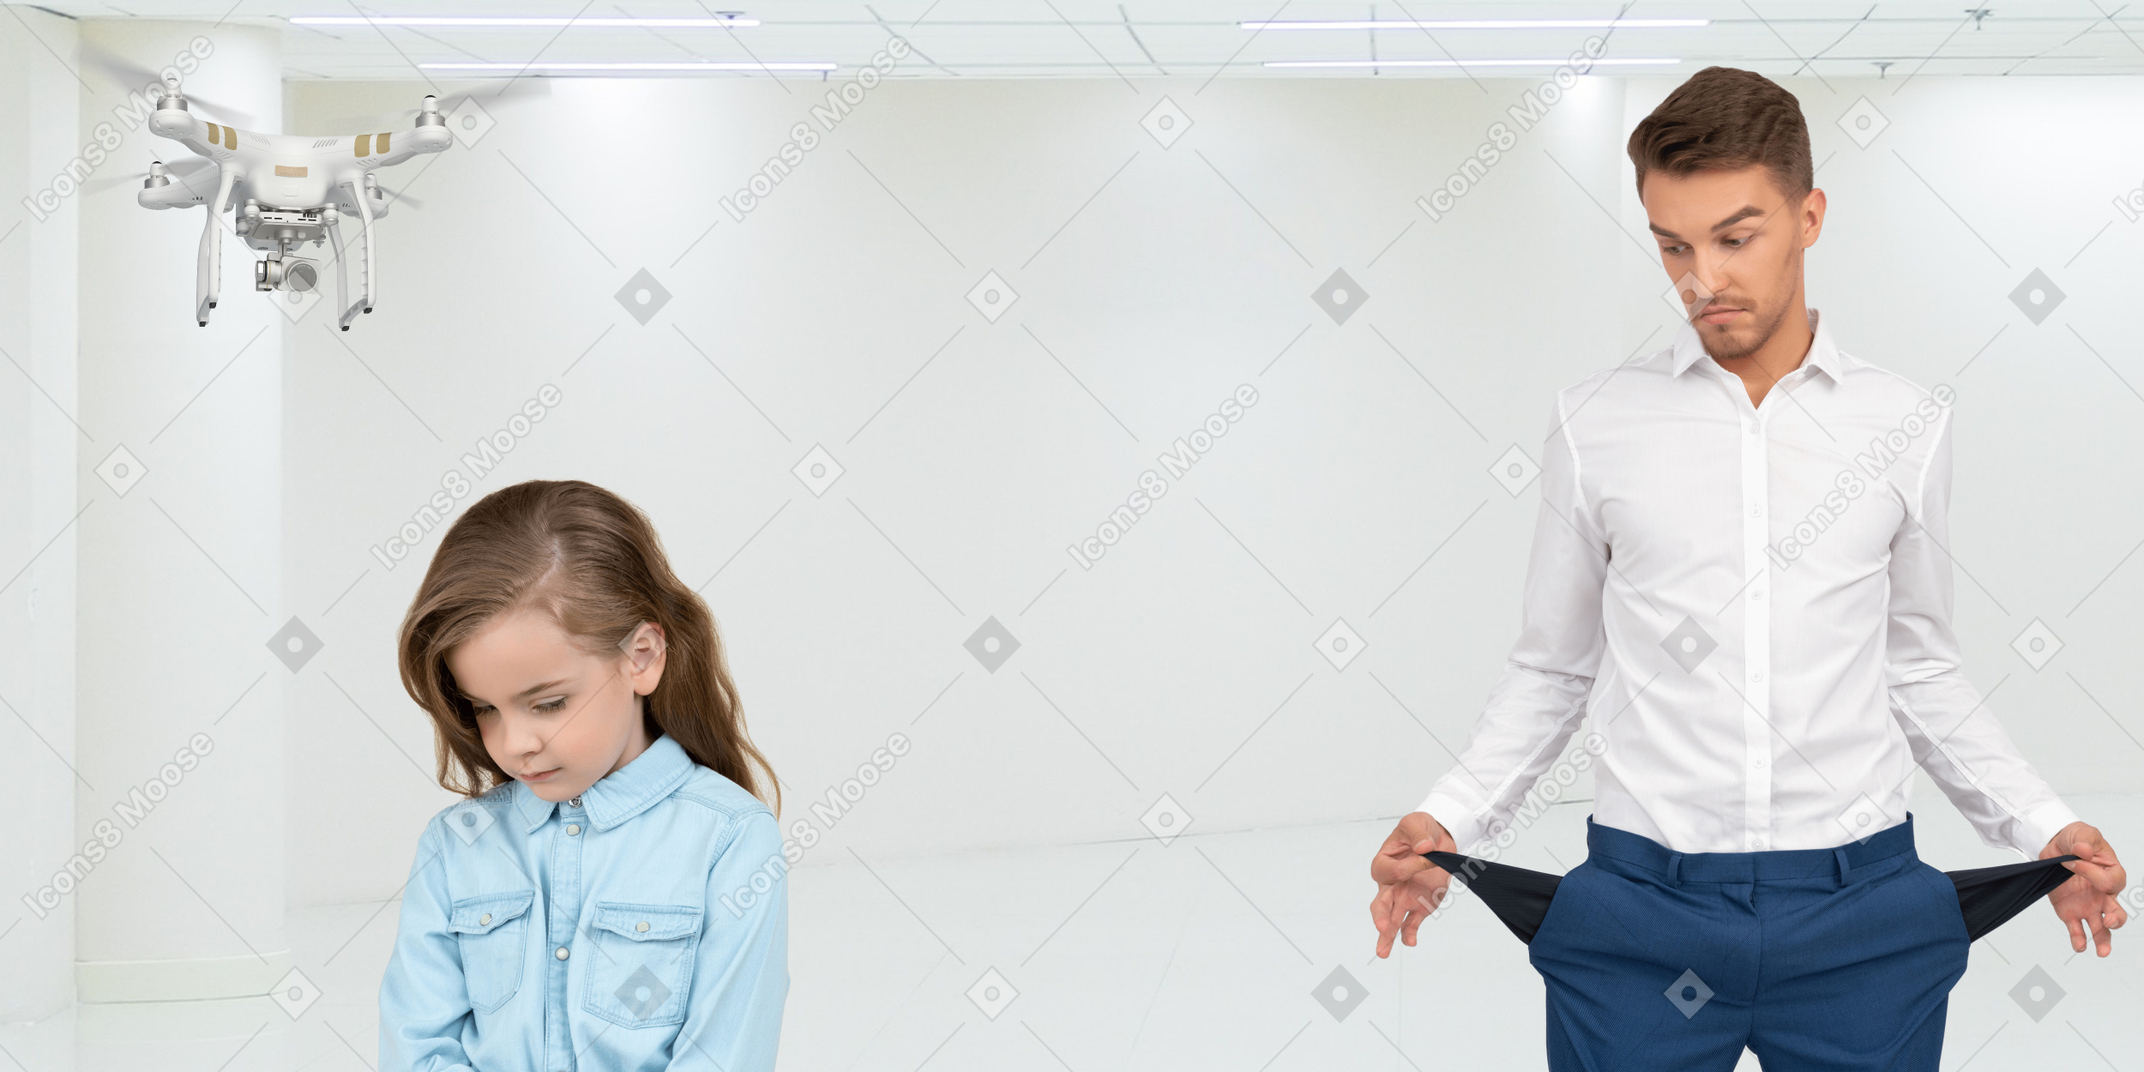 A broke man standing next to an upset little girl